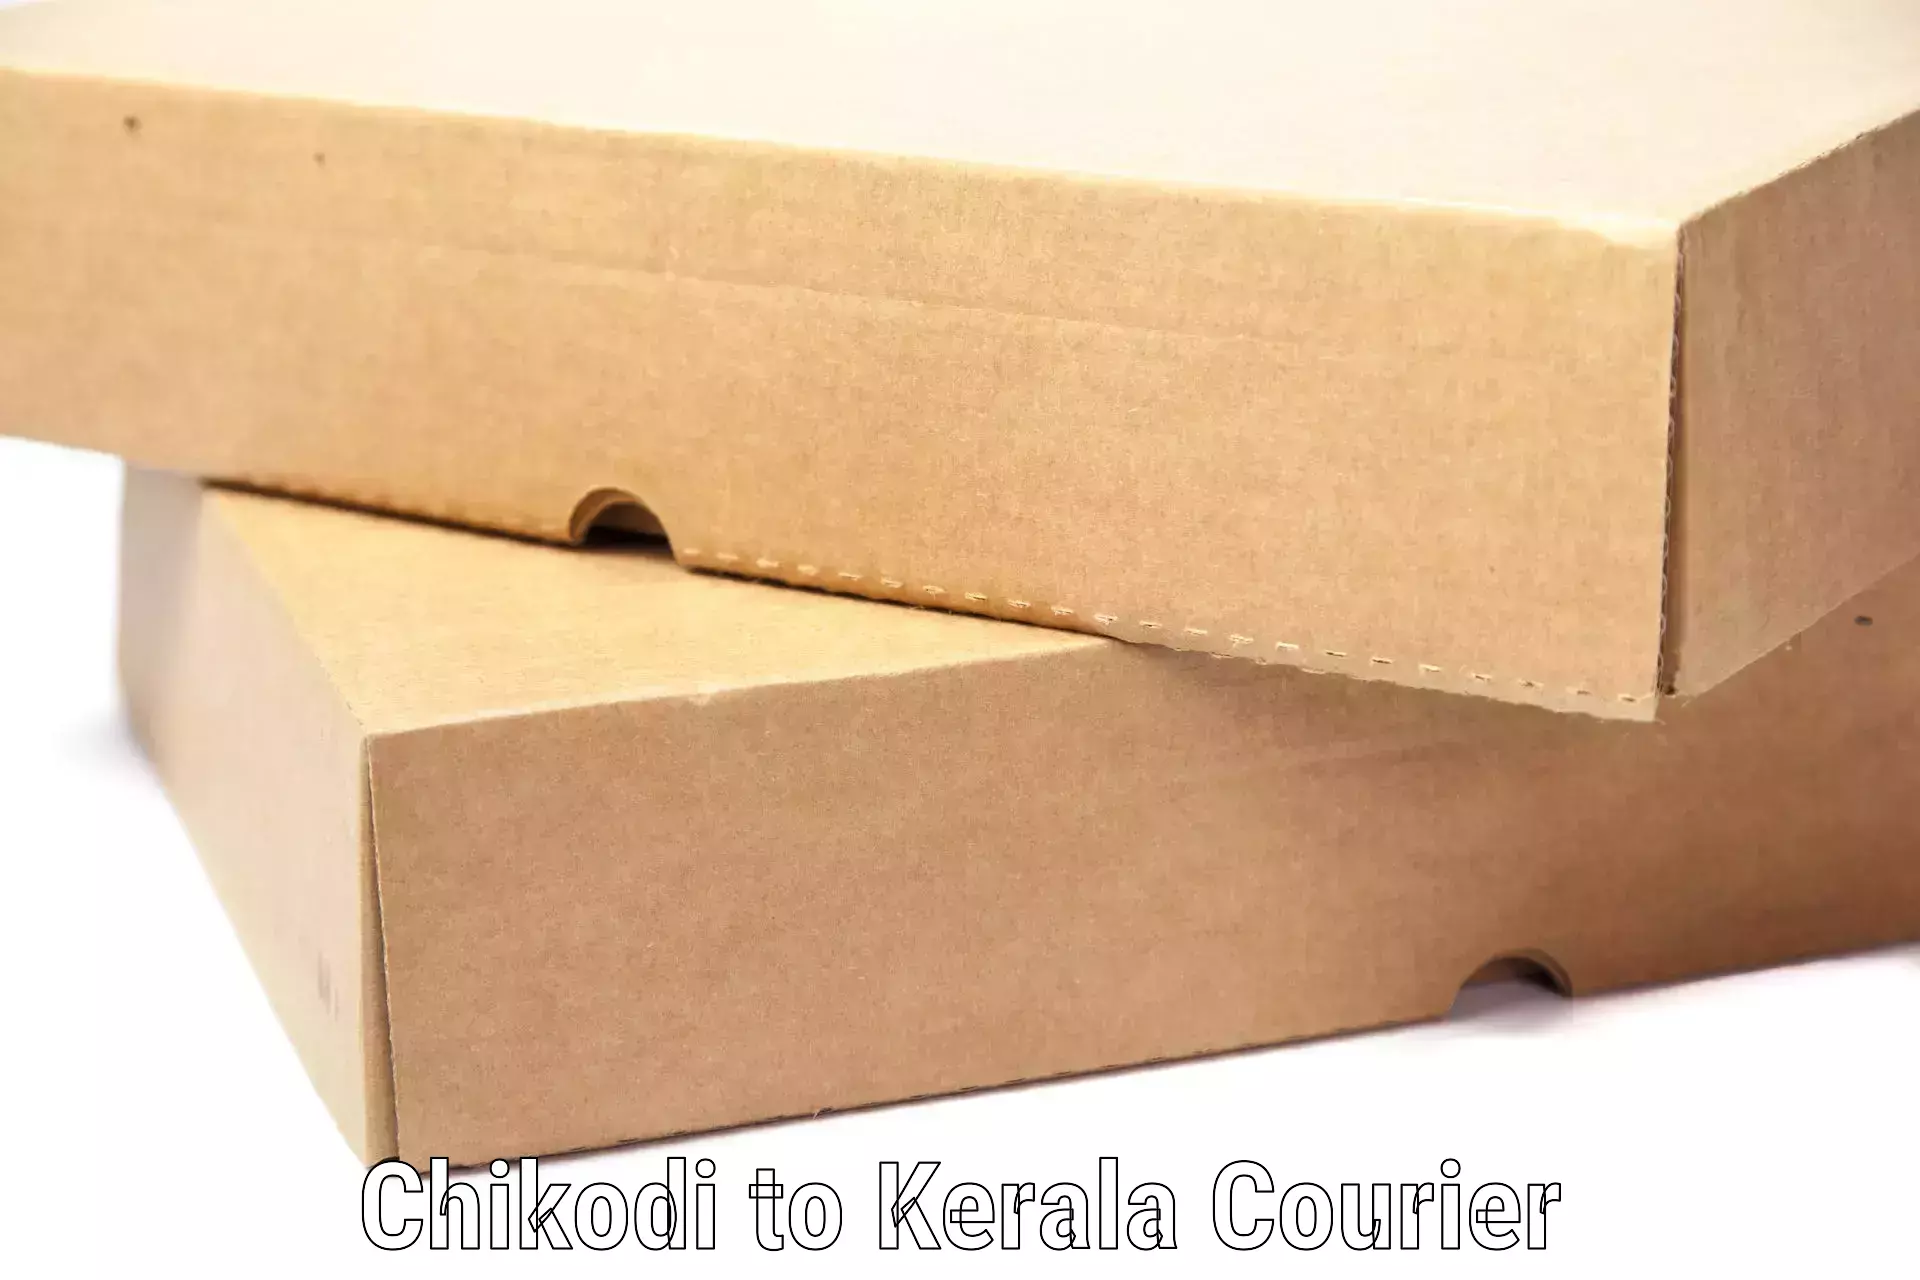 Baggage shipping calculator in Chikodi to Kerala